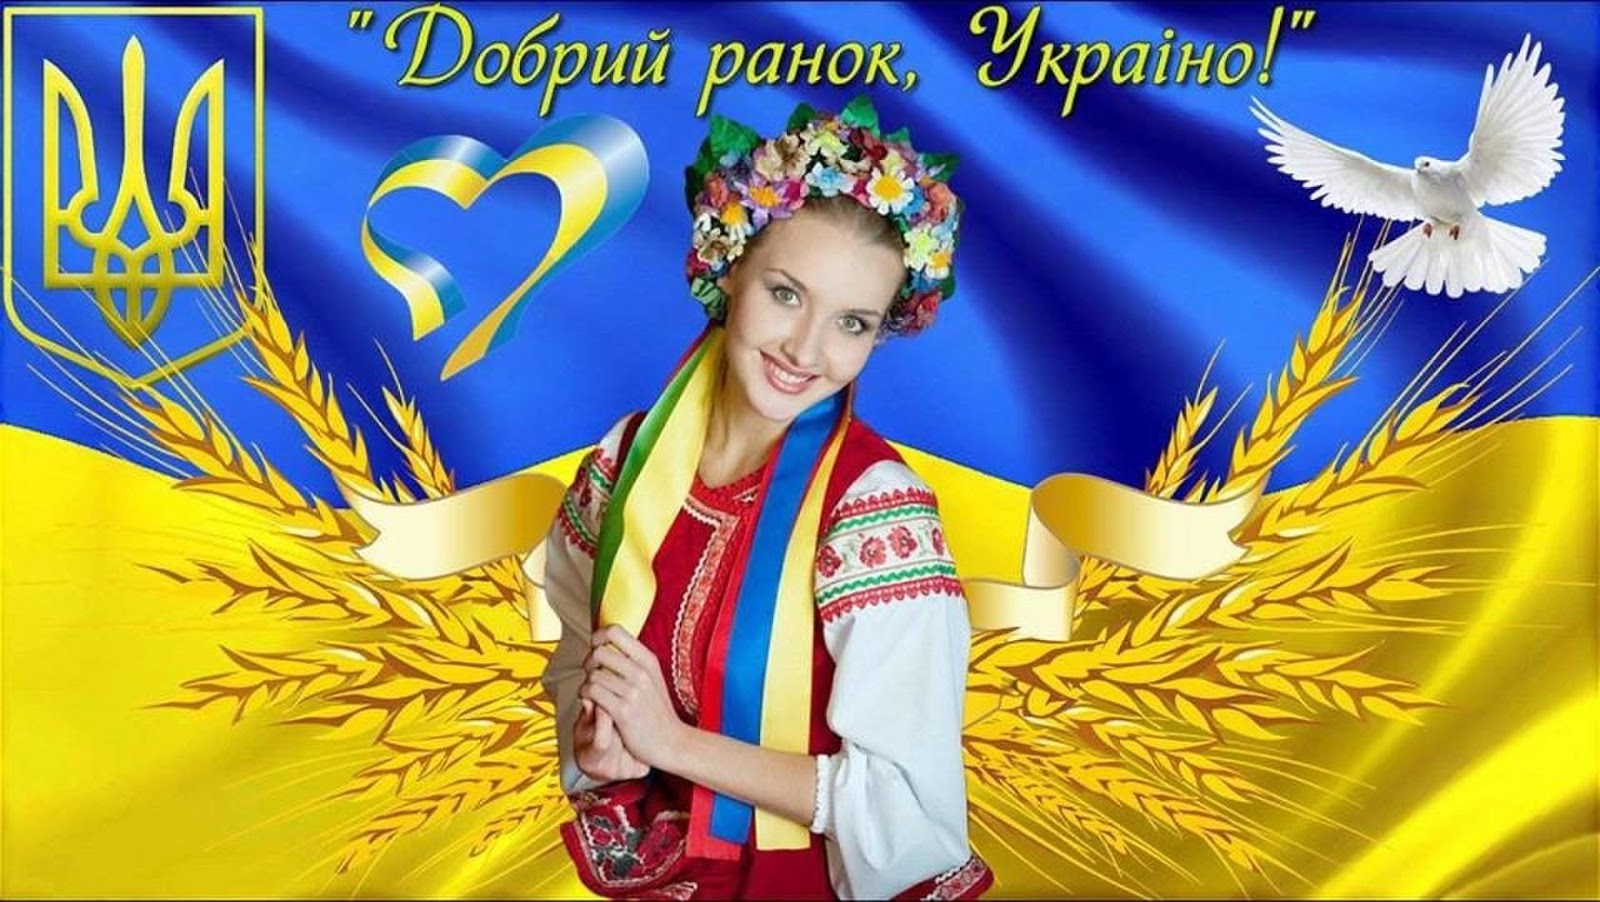 Доброго утра на украинском открытки. Добрый Ранок Украина. Приветствие на украинском. Доброго ранку на украинском открытка. Доброго ранку Україно открытка.